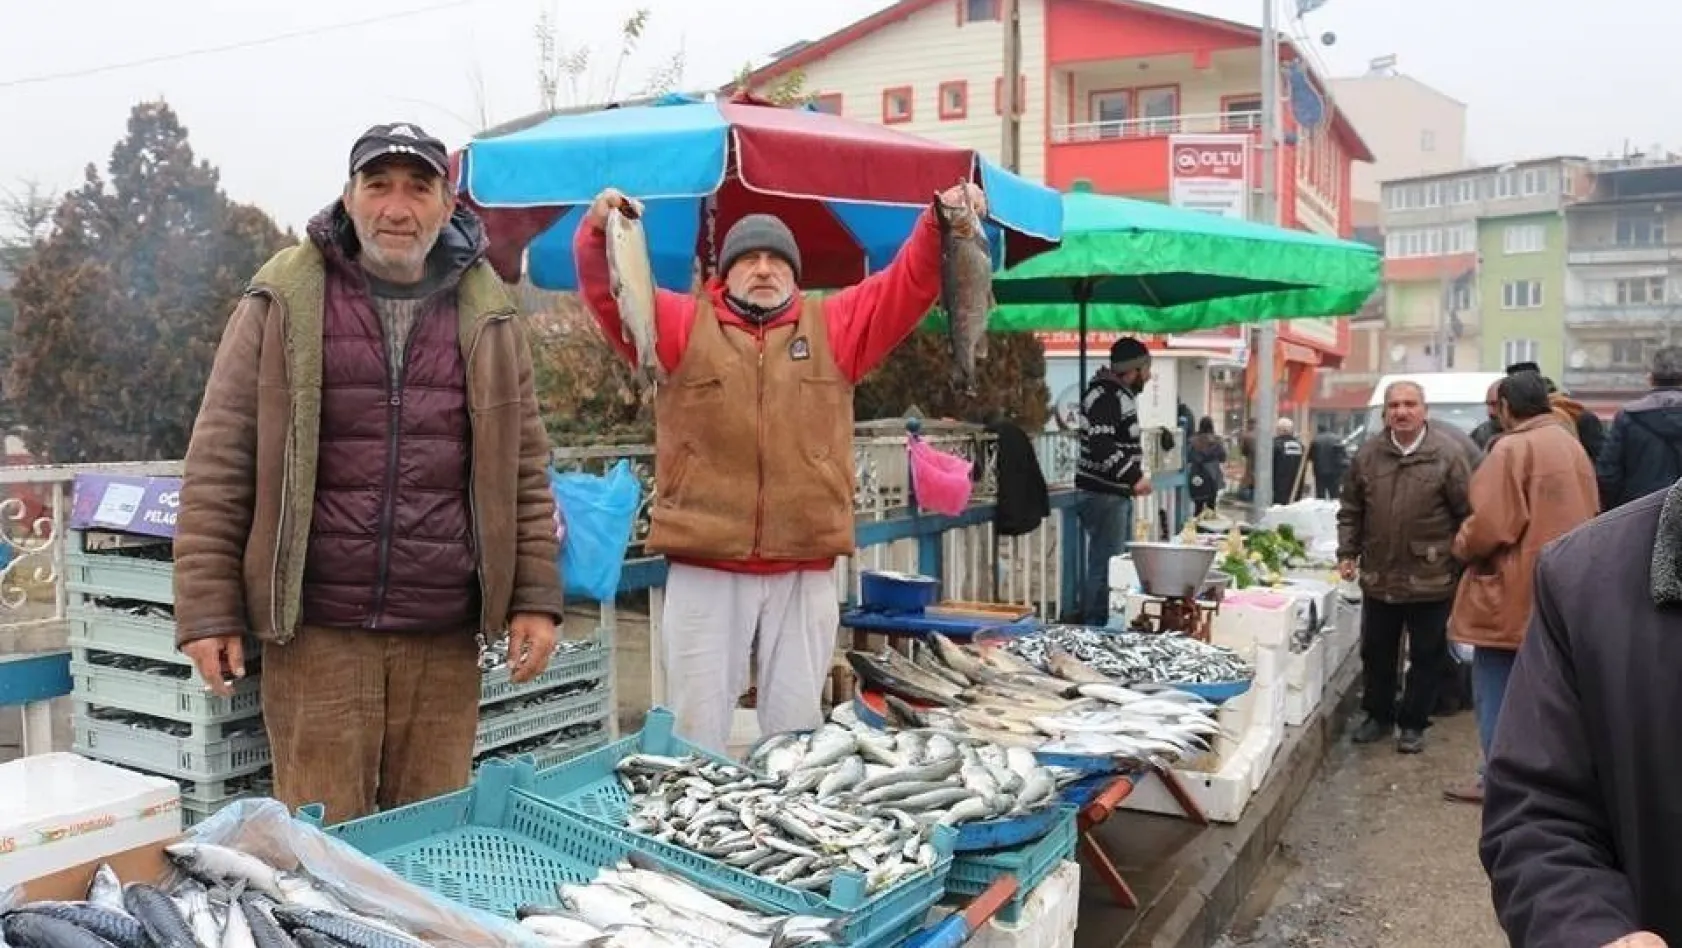 Halk Pazarında balık tezgahlarına ilgi yoğun
